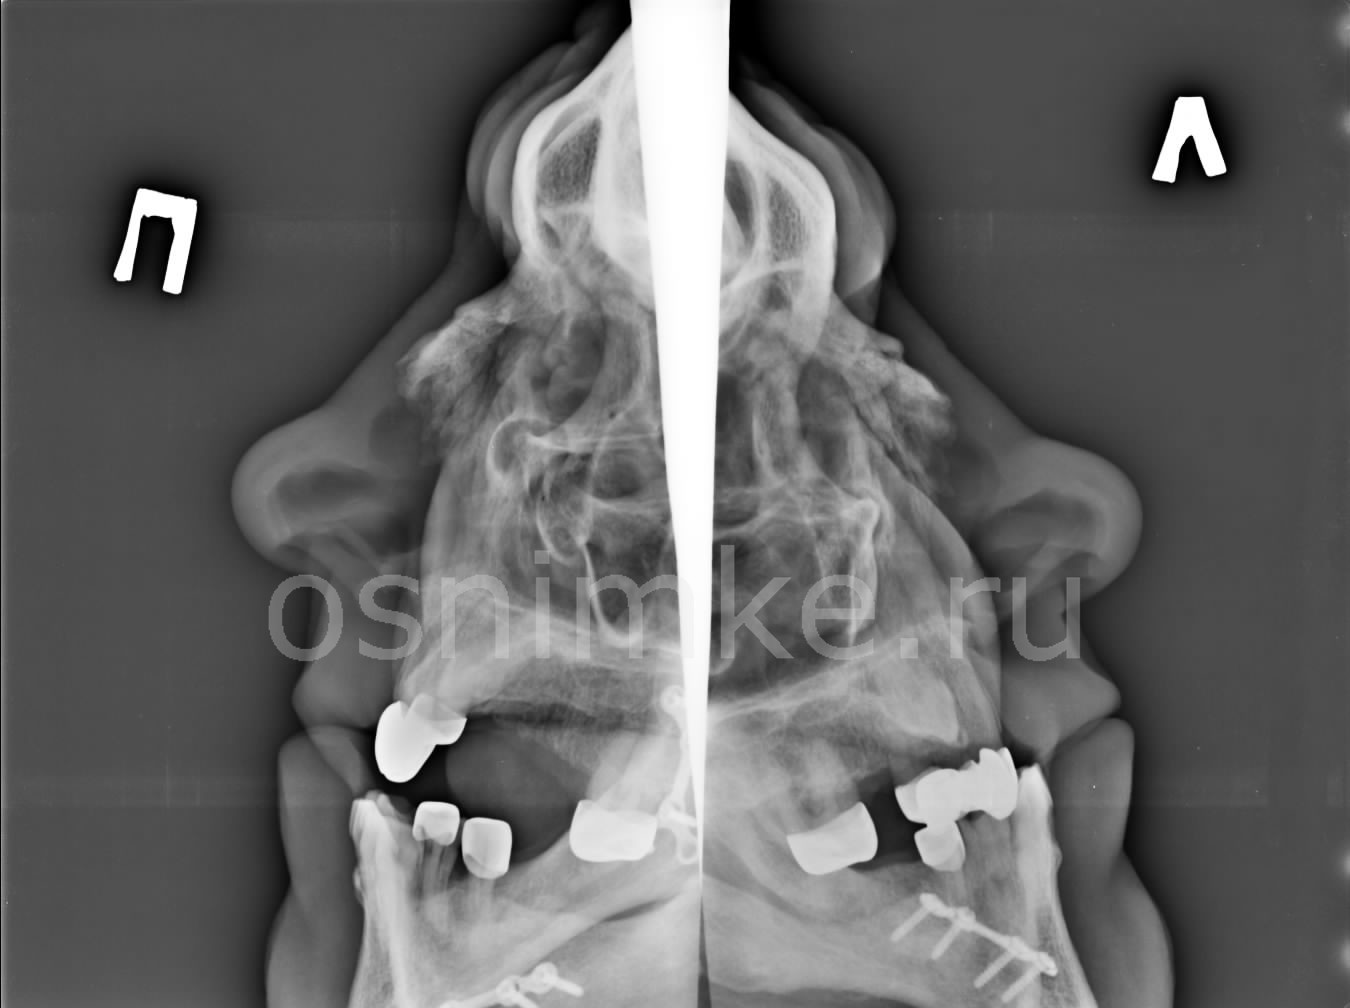 Рентгеновский снимок зубов